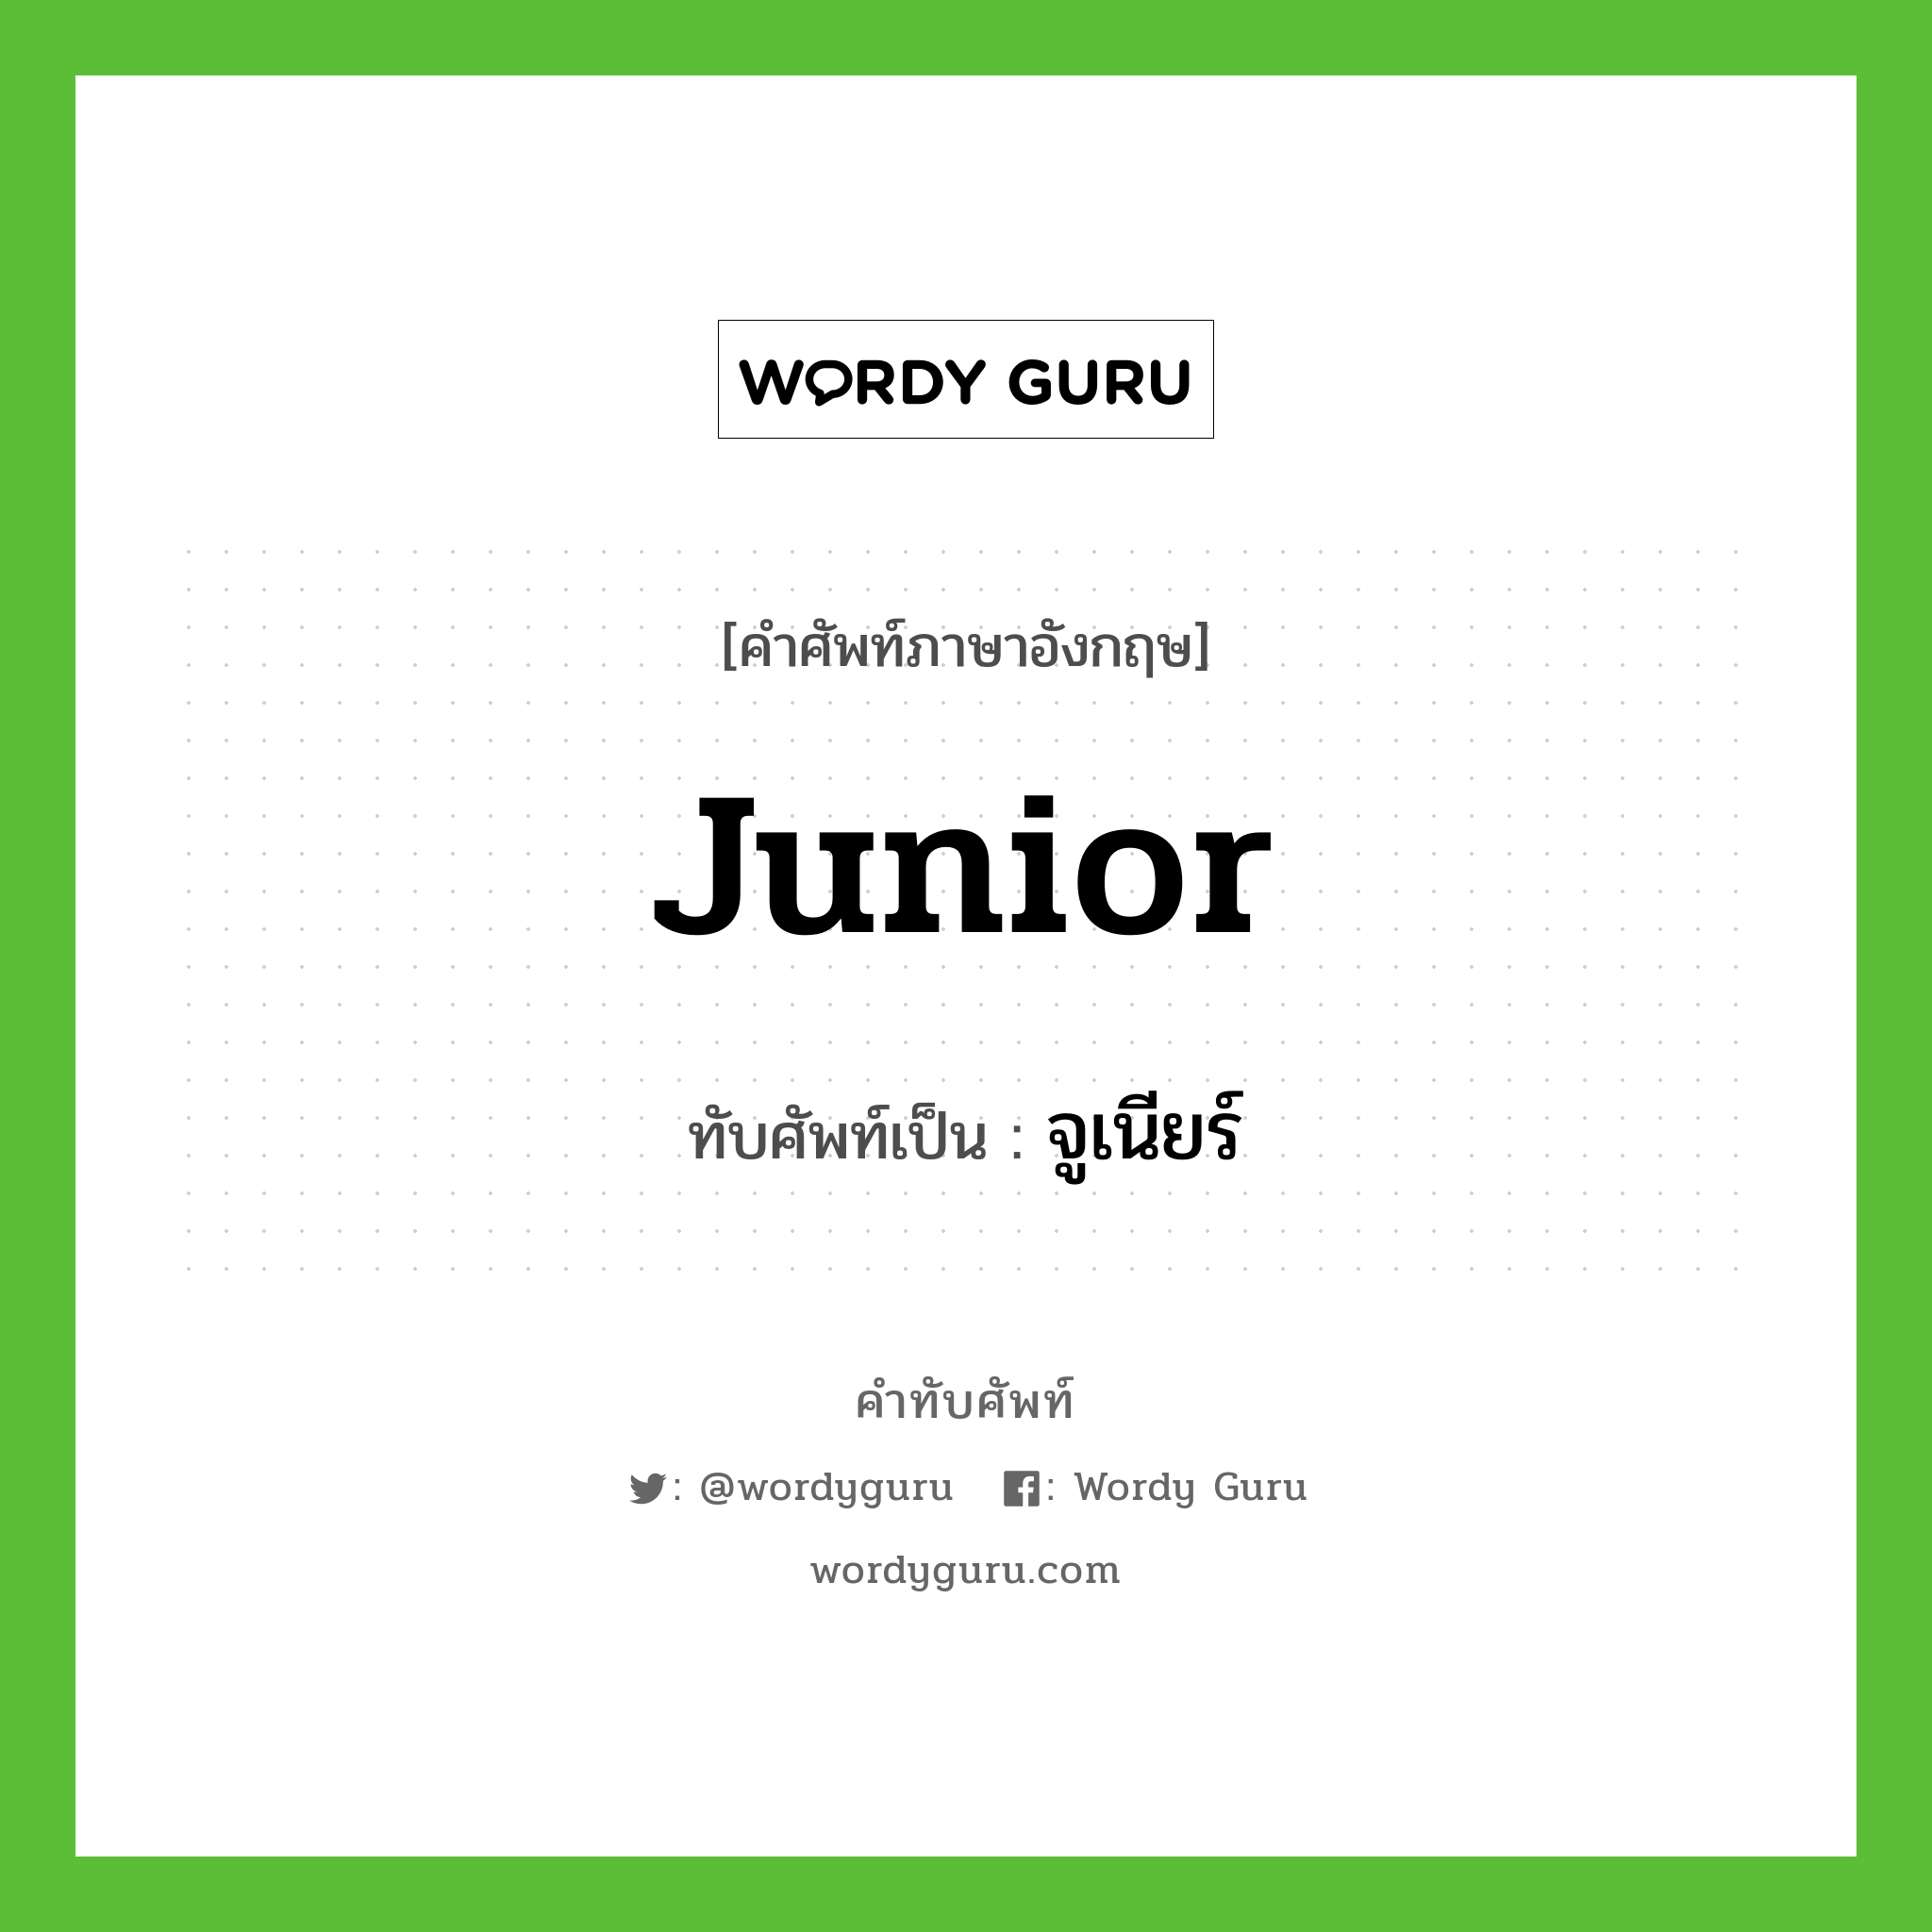 Junior เขียนเป็นคำไทยว่าอะไร?, คำศัพท์ภาษาอังกฤษ Junior ทับศัพท์เป็น จูเนียร์